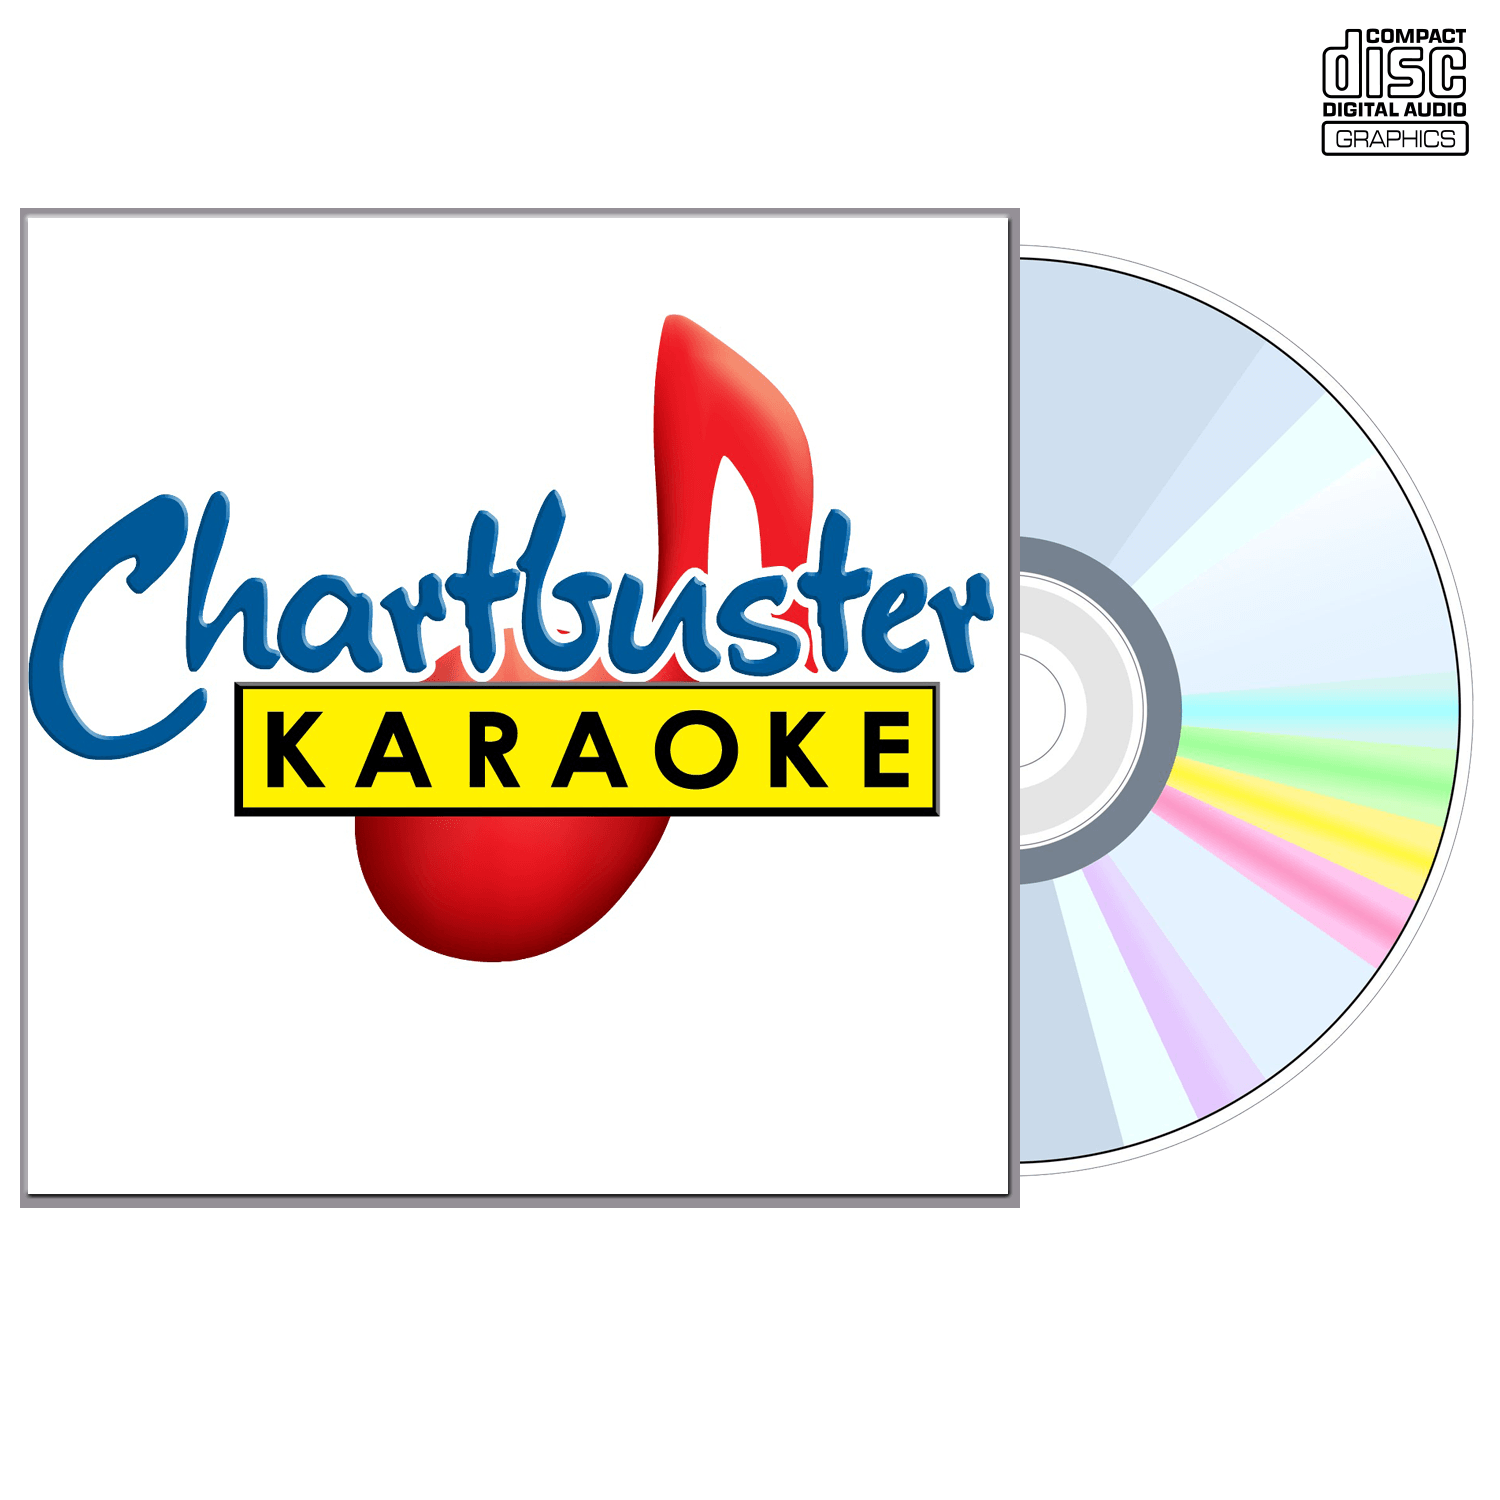 Dan Seals - CD+G - Chartbuster Karaoke - Karaoke Home Entertainment